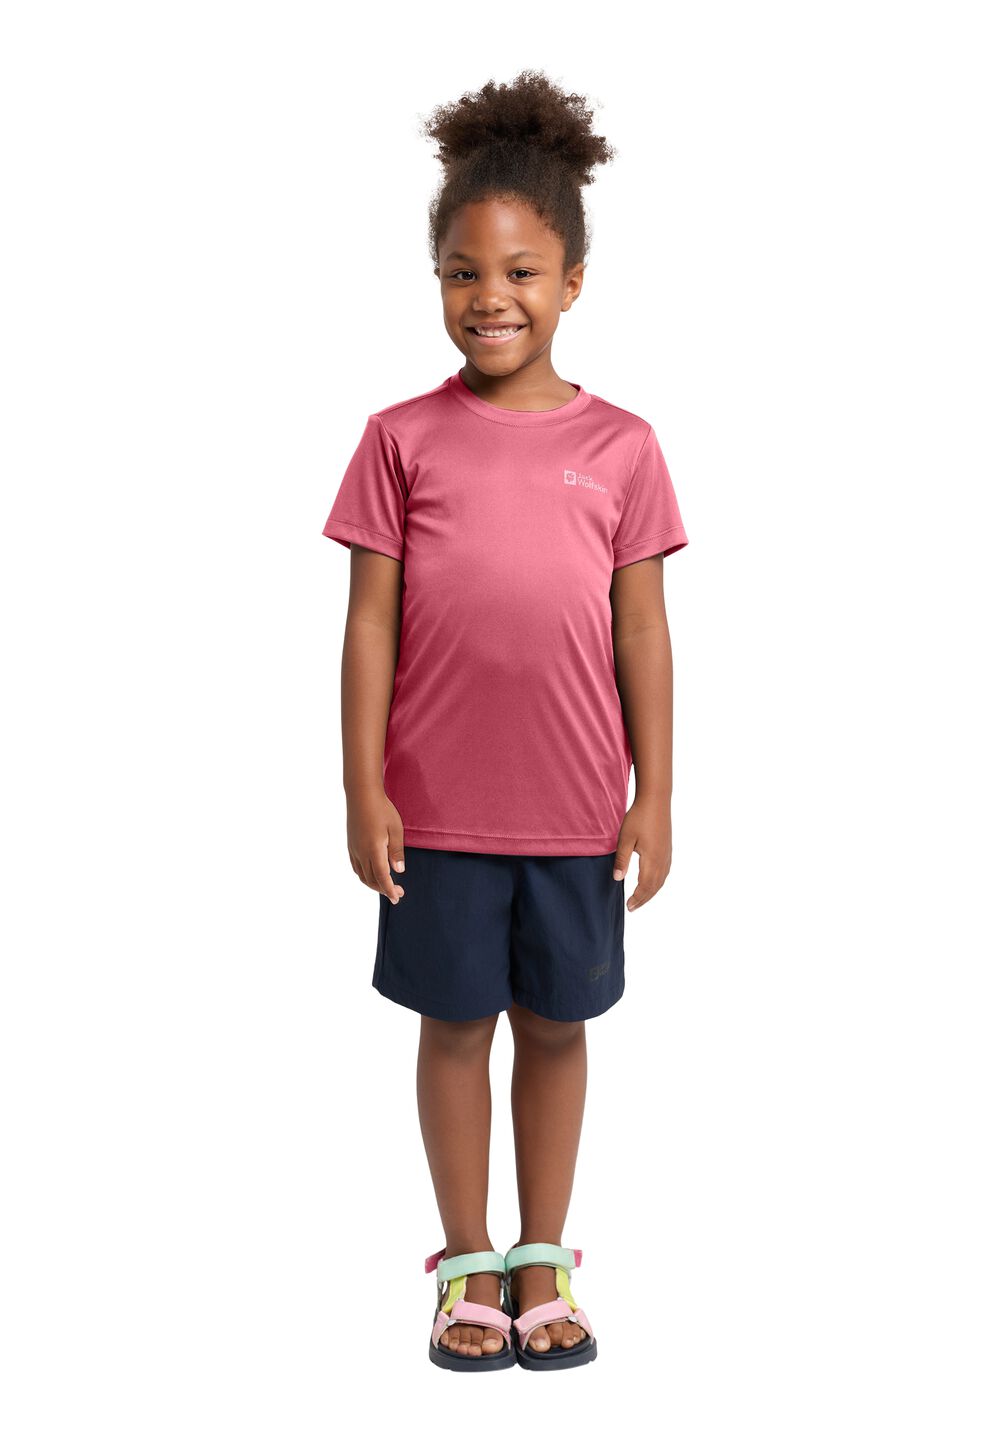 Jack Wolfskin Funktionsshirt Kinder Active Solid T-Shirt Kids 164 soft pink soft pink von Jack Wolfskin